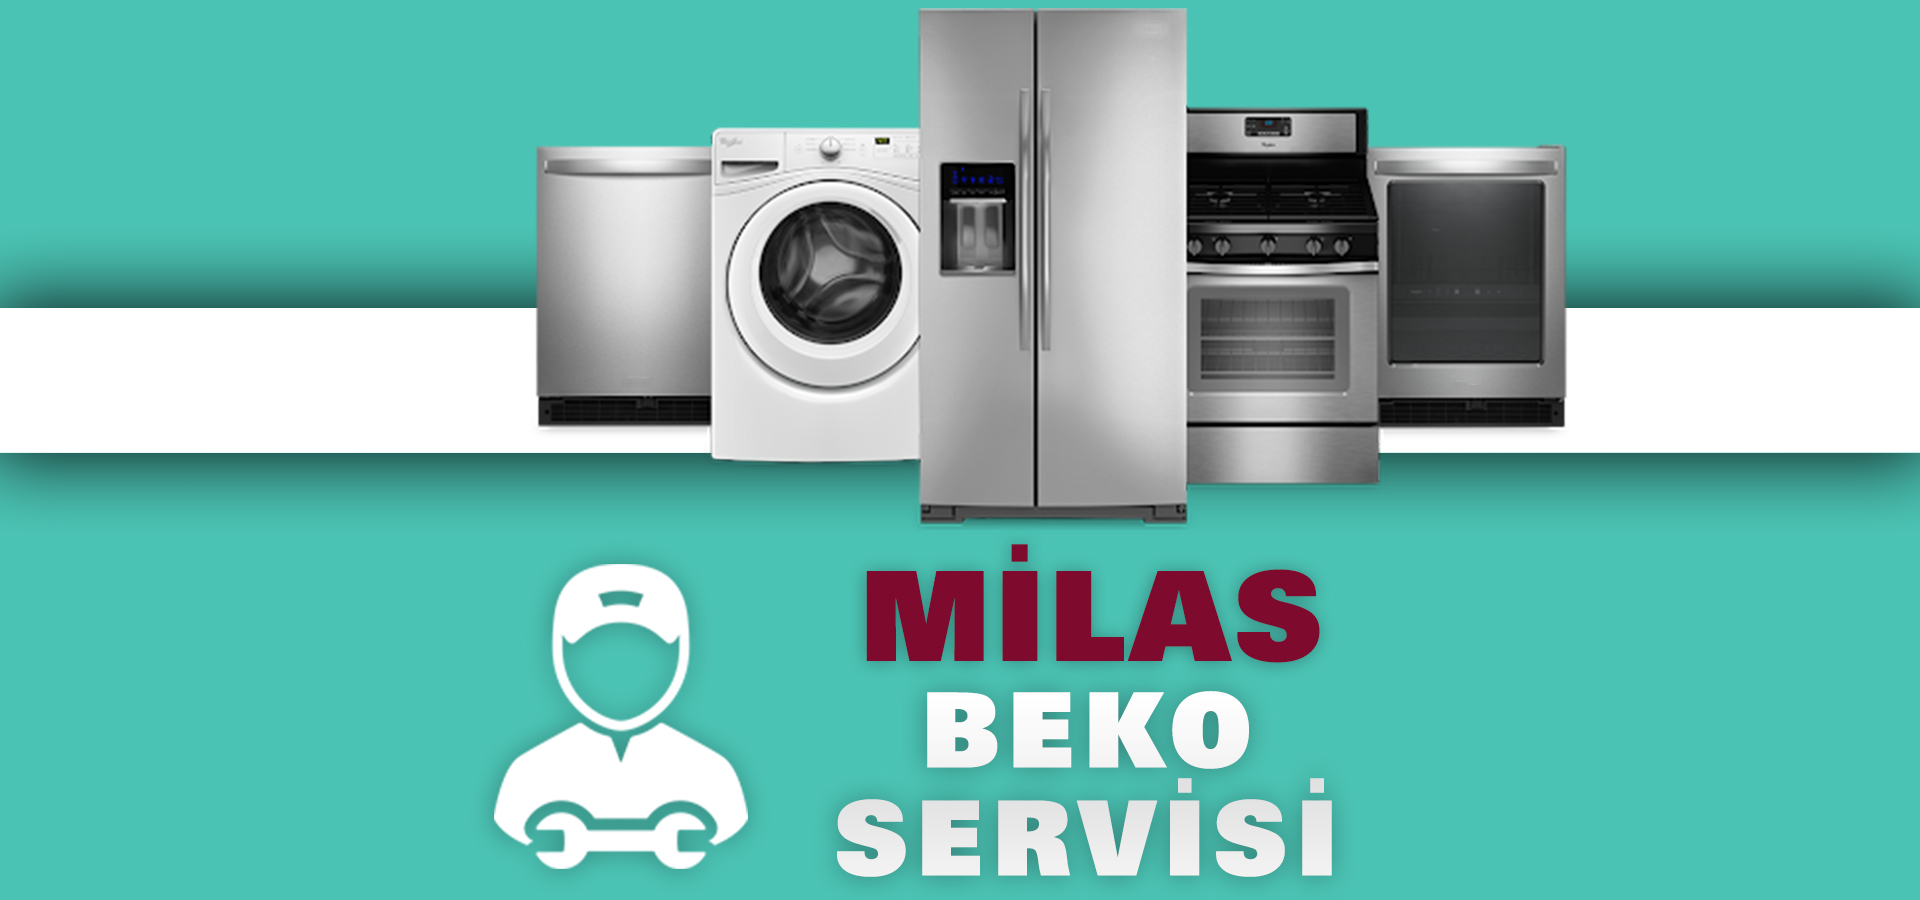 Milas Beko Servisi